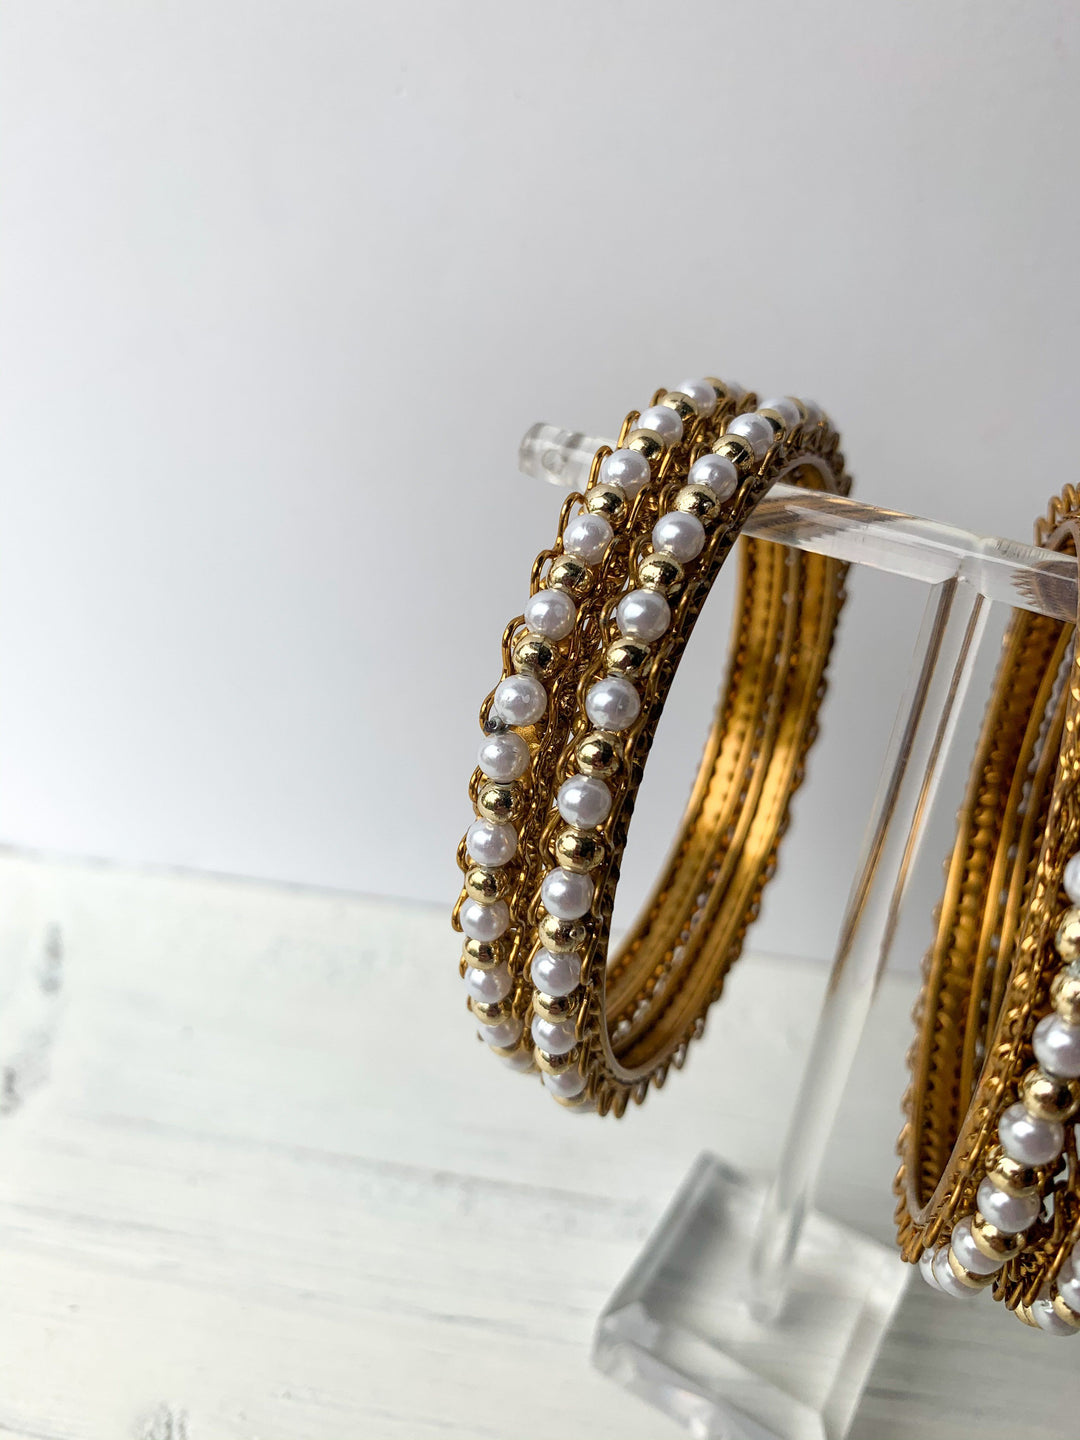 Pearl & Gold Bead Bangles, Bangles - THE KUNDAN SHOP